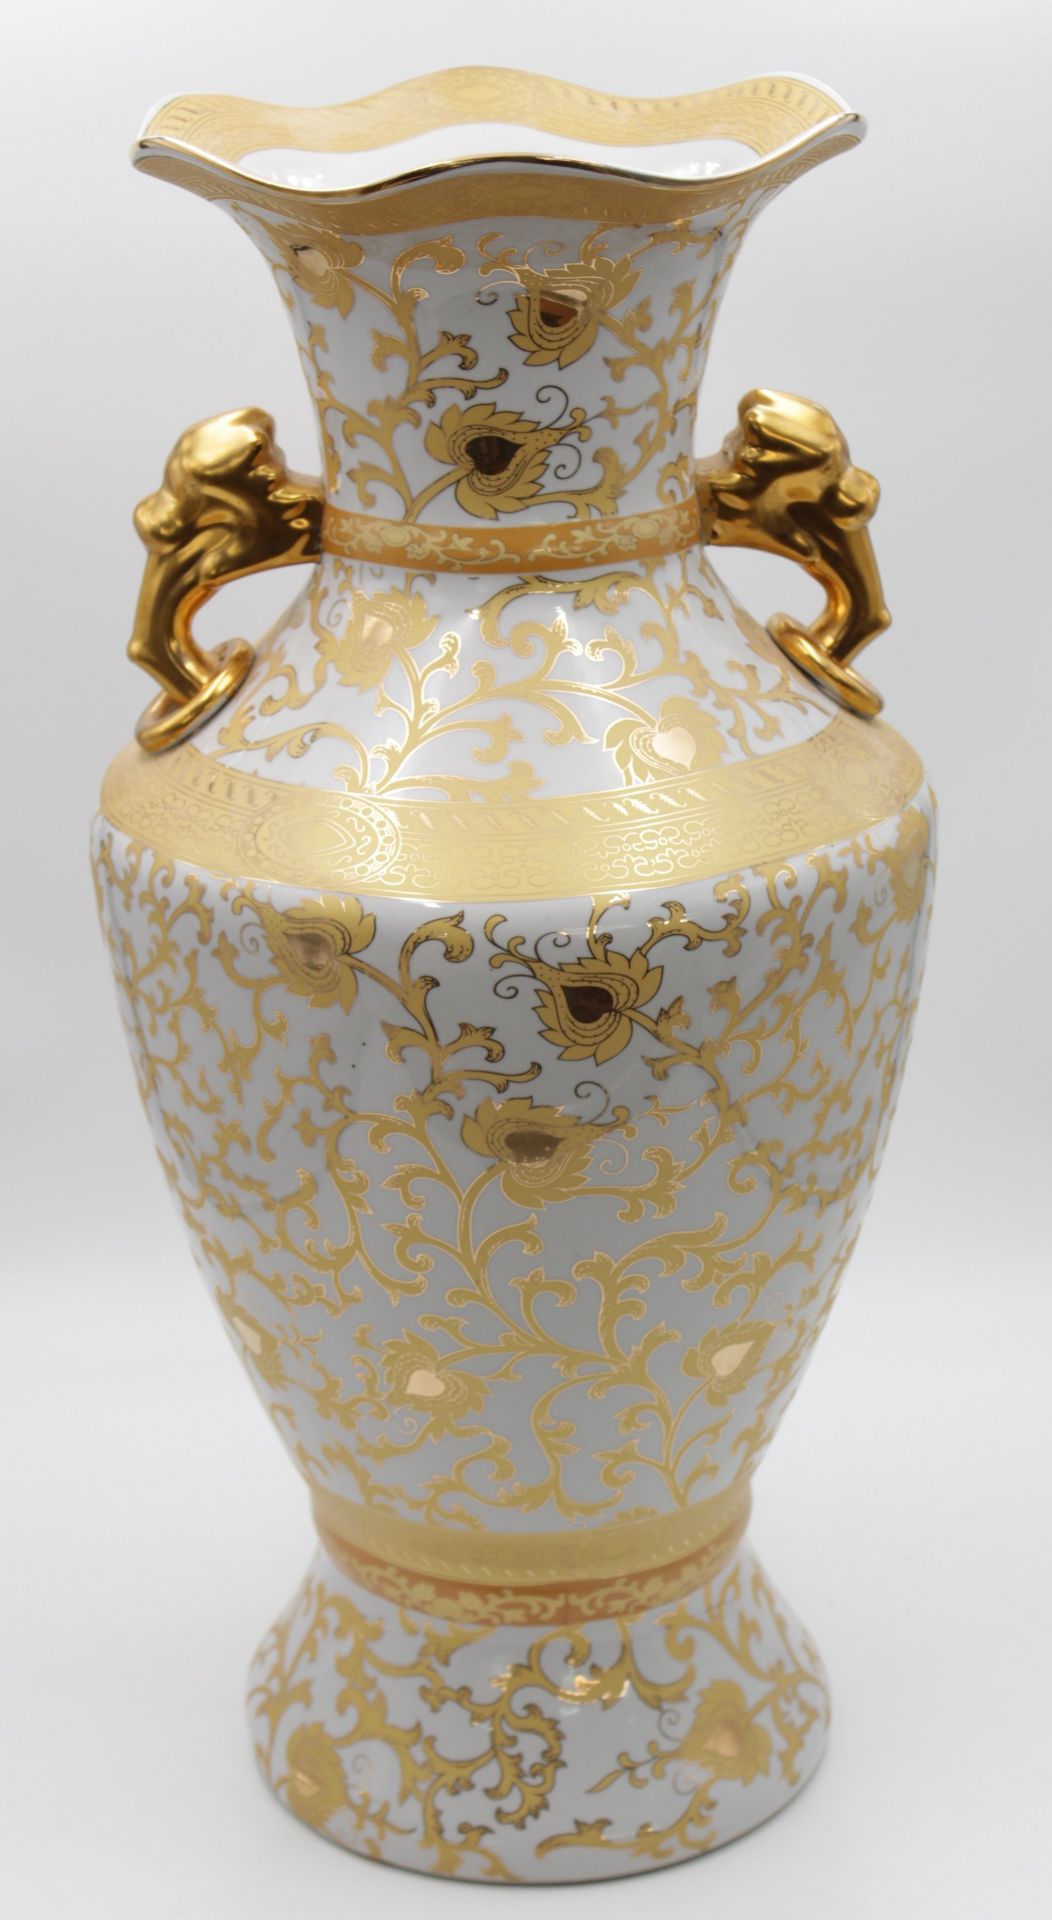 Bodenvase, aufwendiges Golddekor, gemarkt "Crown", H-60cm.